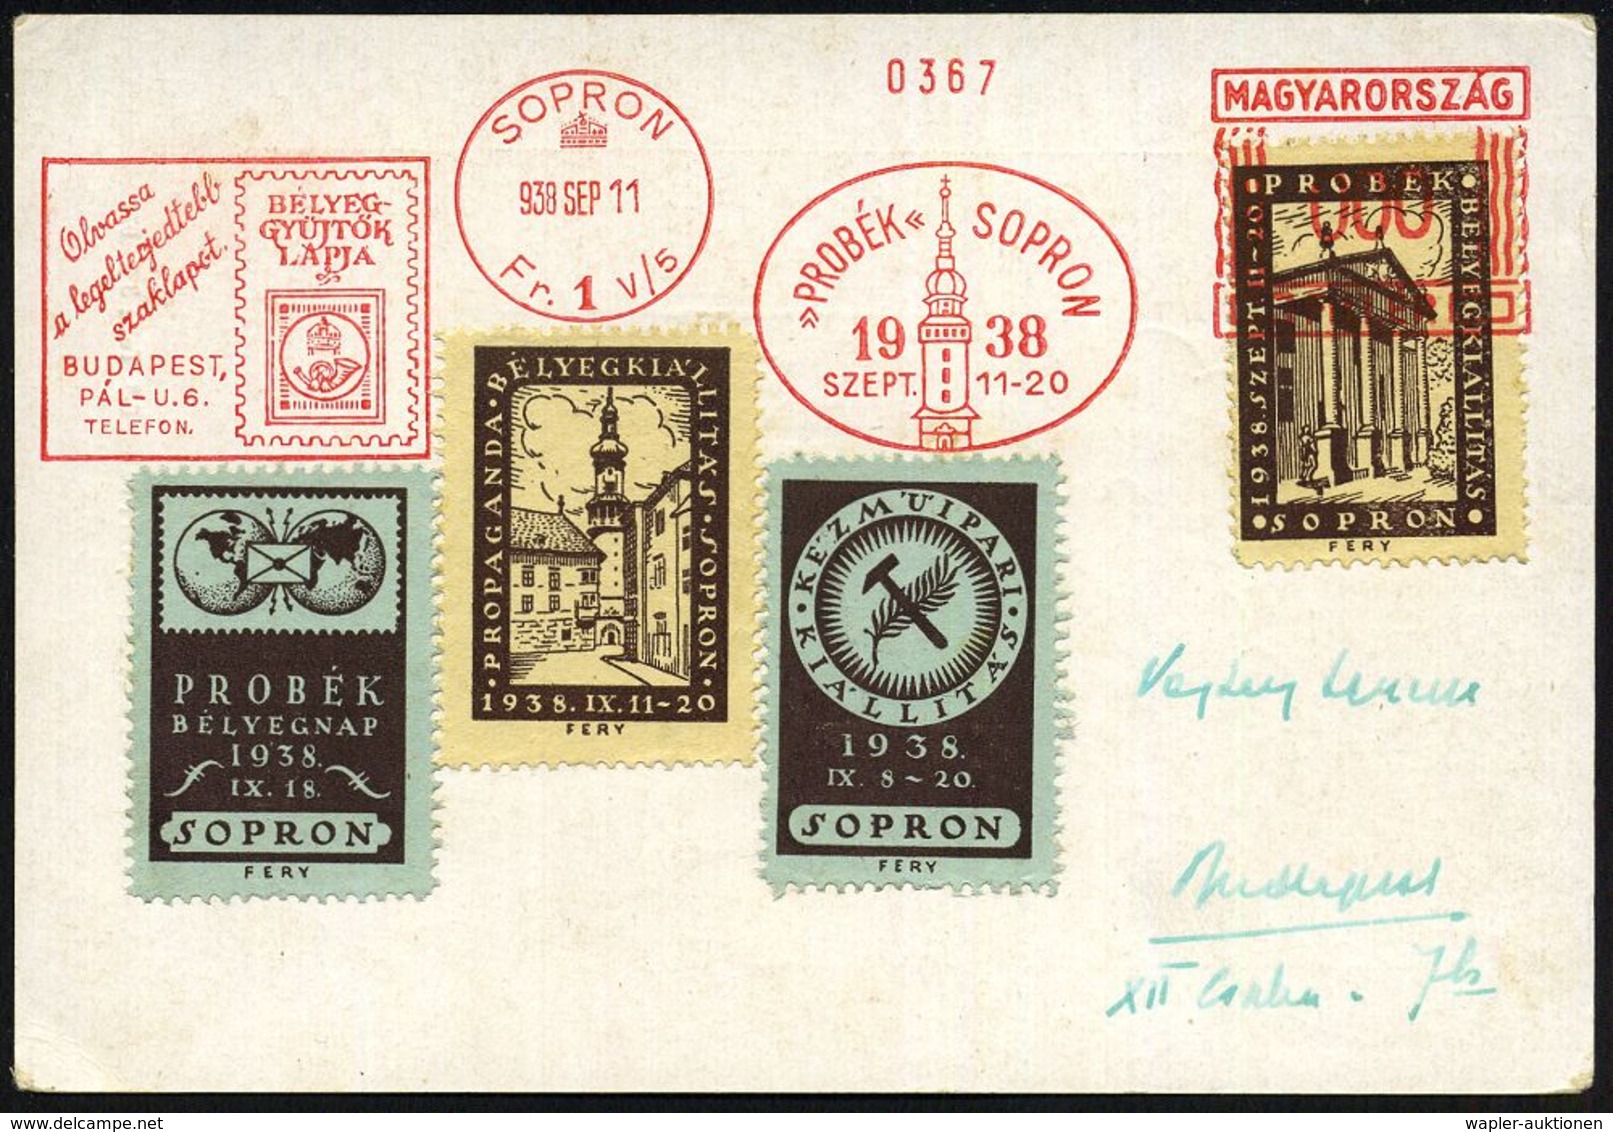 UNGARN 1938 (11.9.) AFS: SOPRON/Fr. 1 V/5/"PROBEK" SOPRON/1938/BELYEG-/GYÜJTÖK/LAPJA.. Ungar. Briefmarke, Turm) In 000 A - Filatelistische Tentoonstellingen